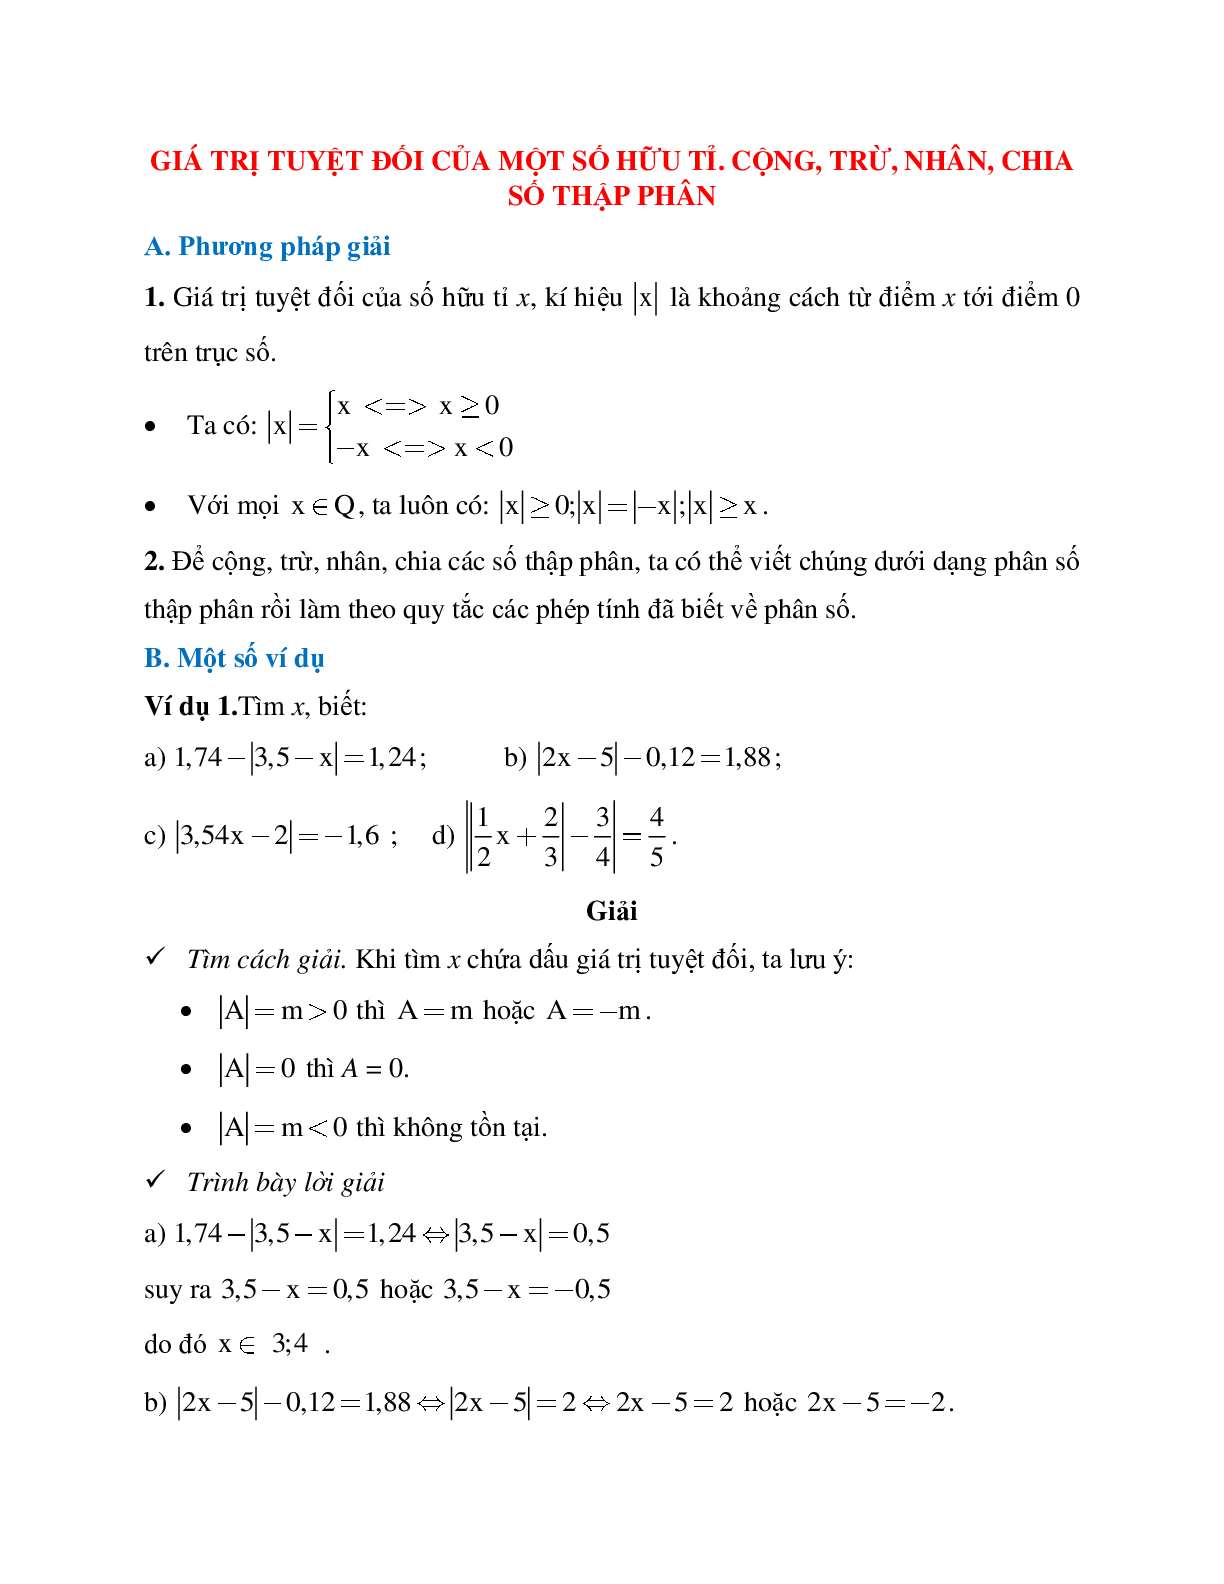 Phương pháp giải bài tập về Giá trị tuyệt đối của một số hữu tỉ - Cộng, trừ, nhân, chia số thập phân có lời giải (trang 1)